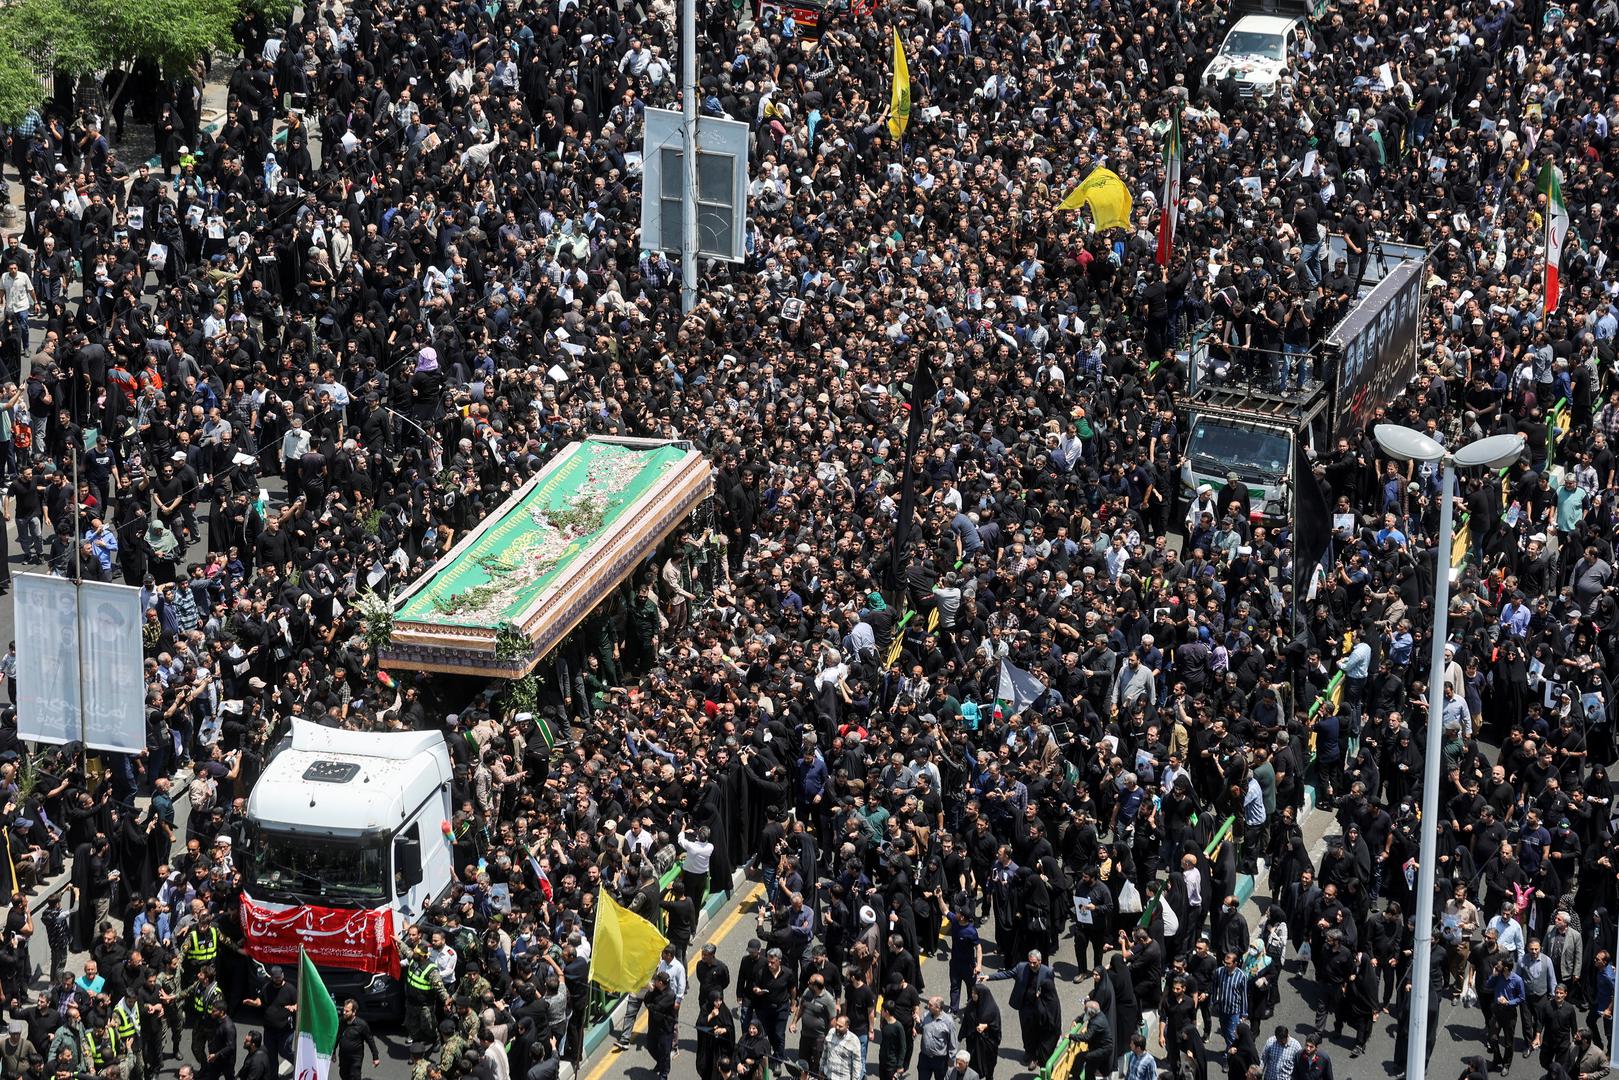 Srijeda je proglašena državnim praznikom i stanovnici Teherana su na svoje telefone primili poruke u kojima su ih pozivali da "dođu na pogreb mučenika".